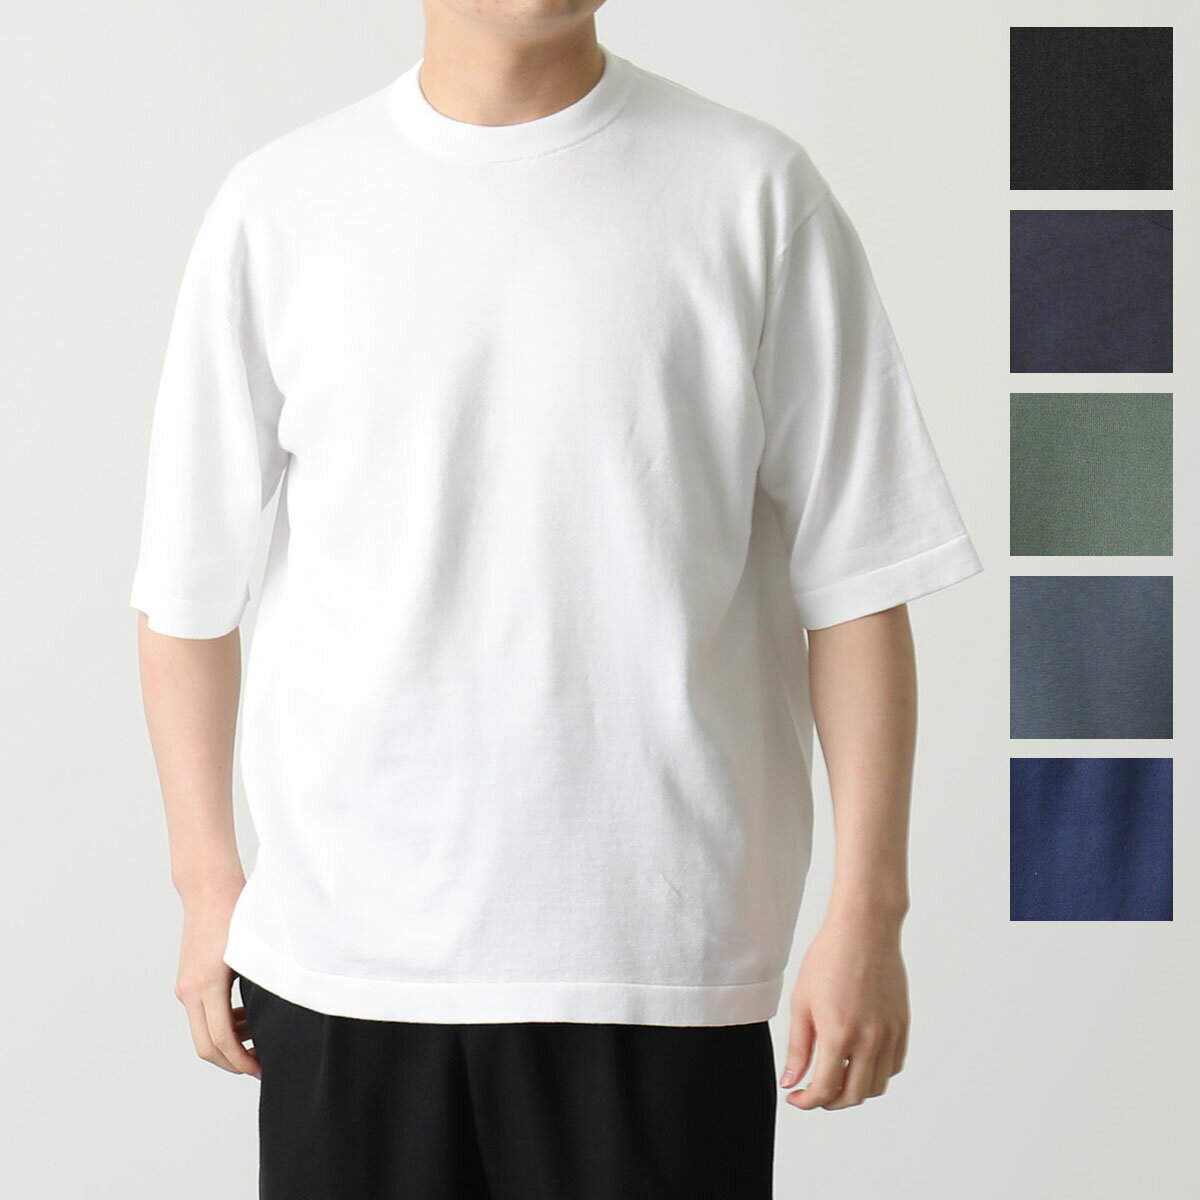 日本製 ジャガードニットシャツ 高級ニットシャツ メンズ 秋冬春 40代 50代 60代 958112